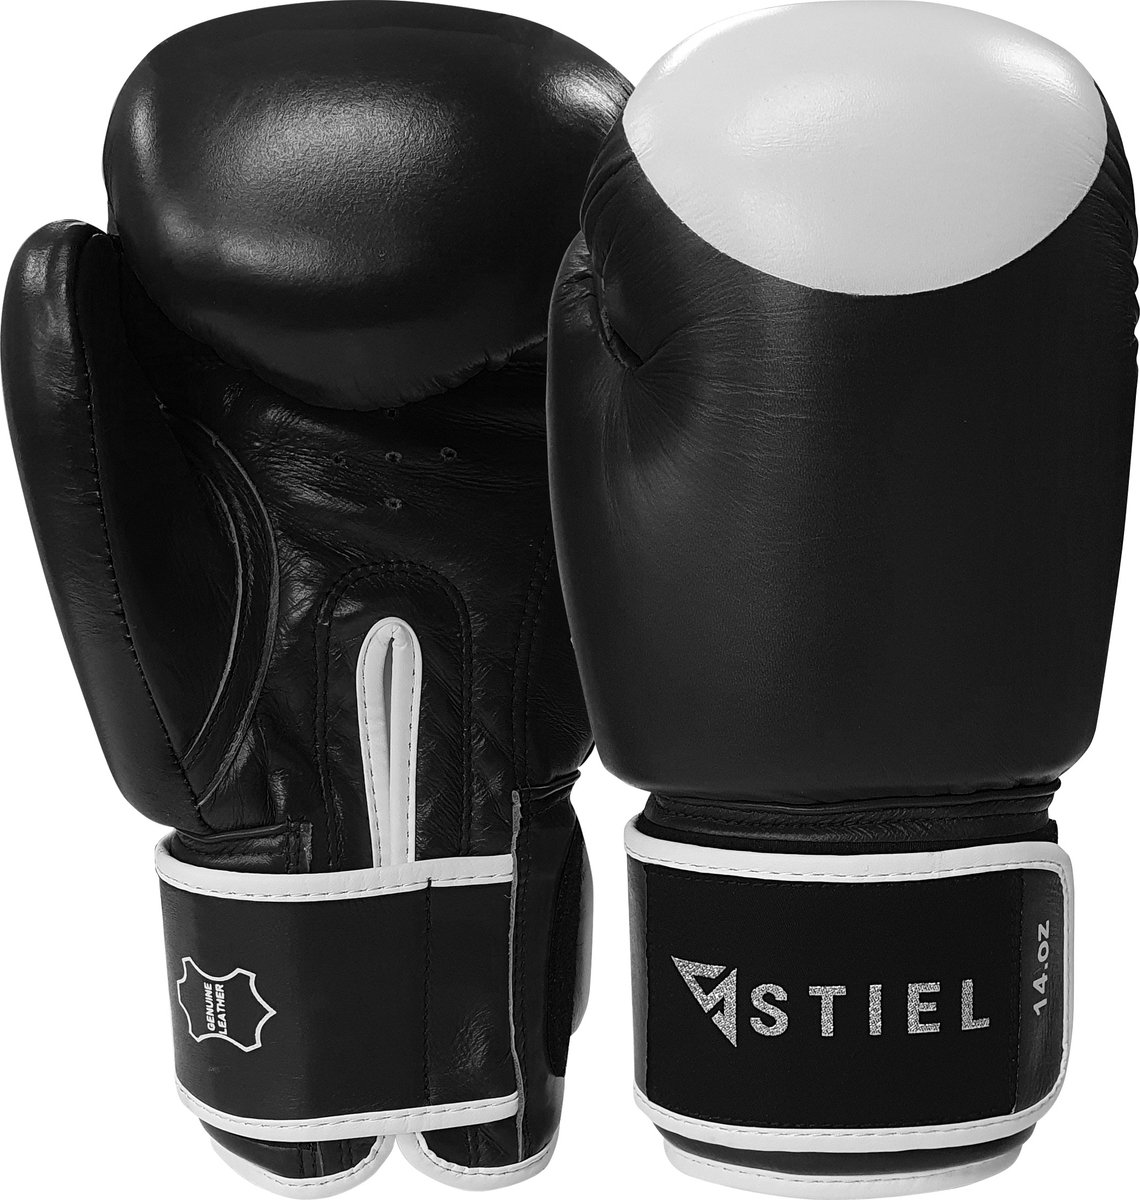 Stiel Pro Boxing Bokshandschoenen - met target - Zwart - 14 oz.